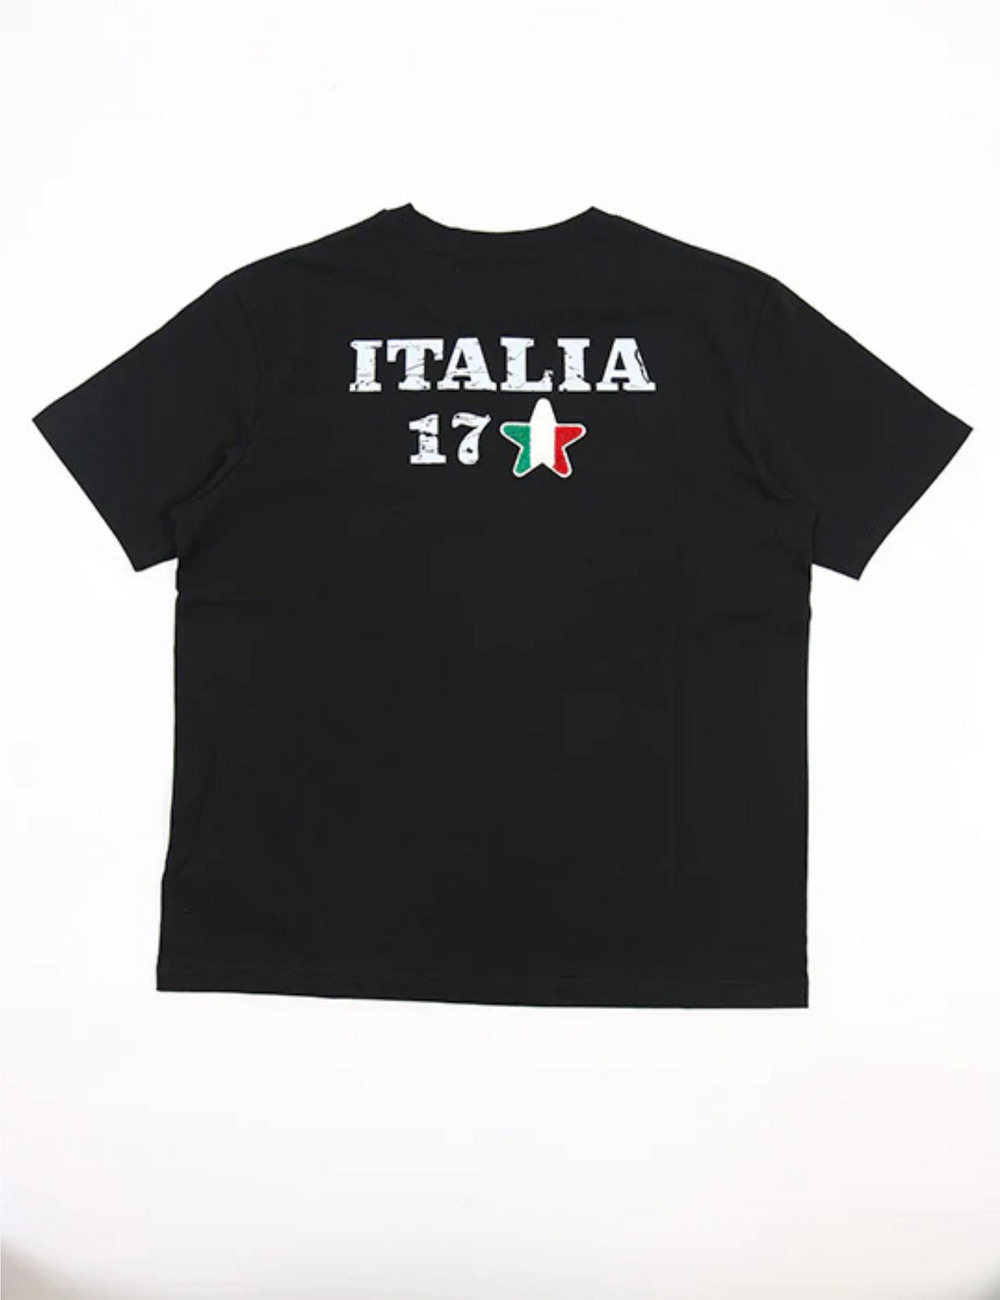 イタリア17Tシャツ(半袖) / ITALIA 17 T SHIRT 詳細画像 ブラック 2